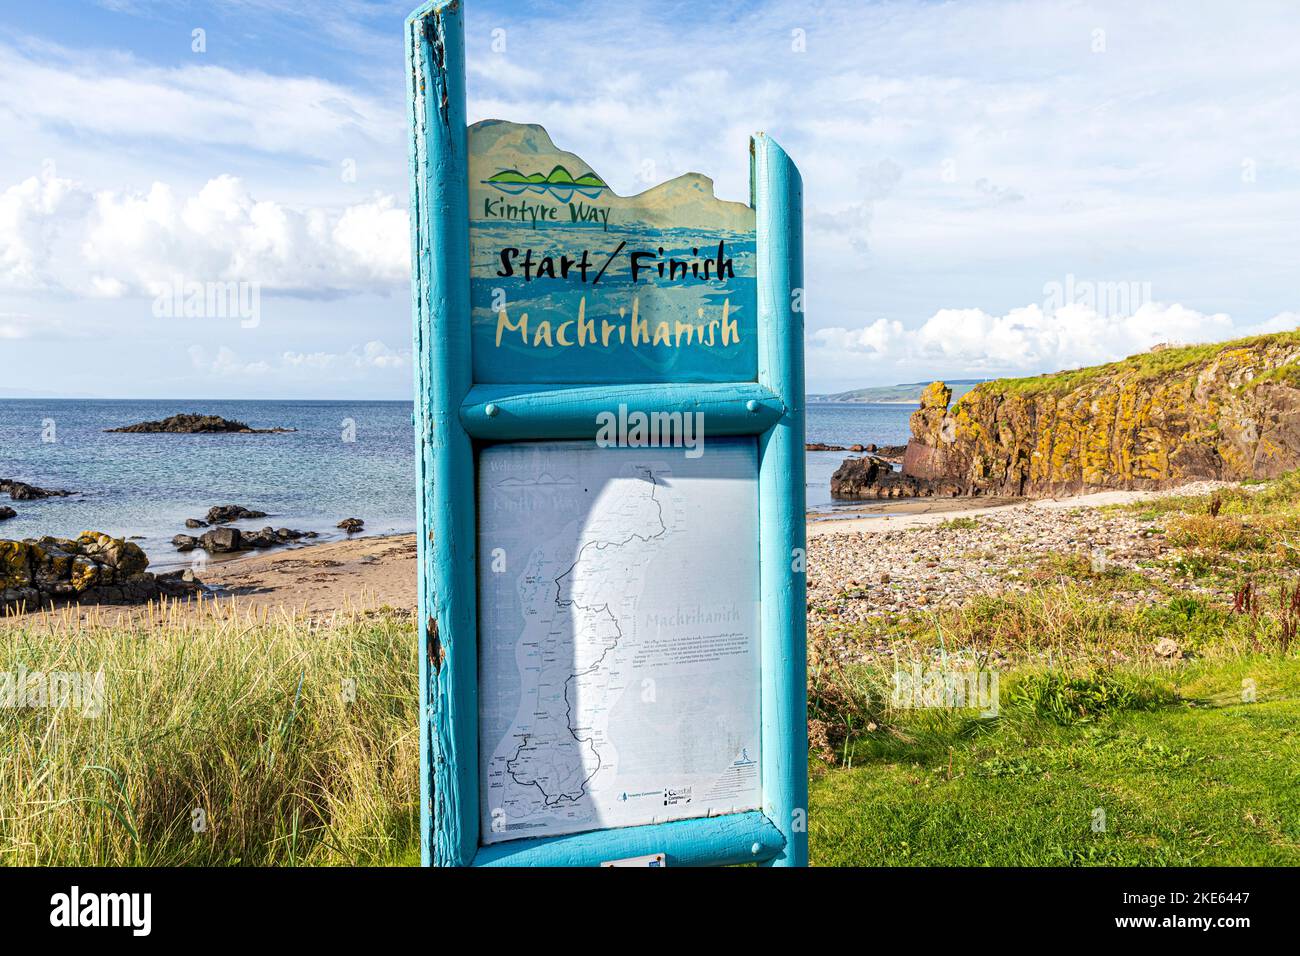 Start- und Zielschild für den Kintyre Way auf der Kintyre Peninsula in Machrihanish, Argyll & Bute, Schottland, Großbritannien Stockfoto